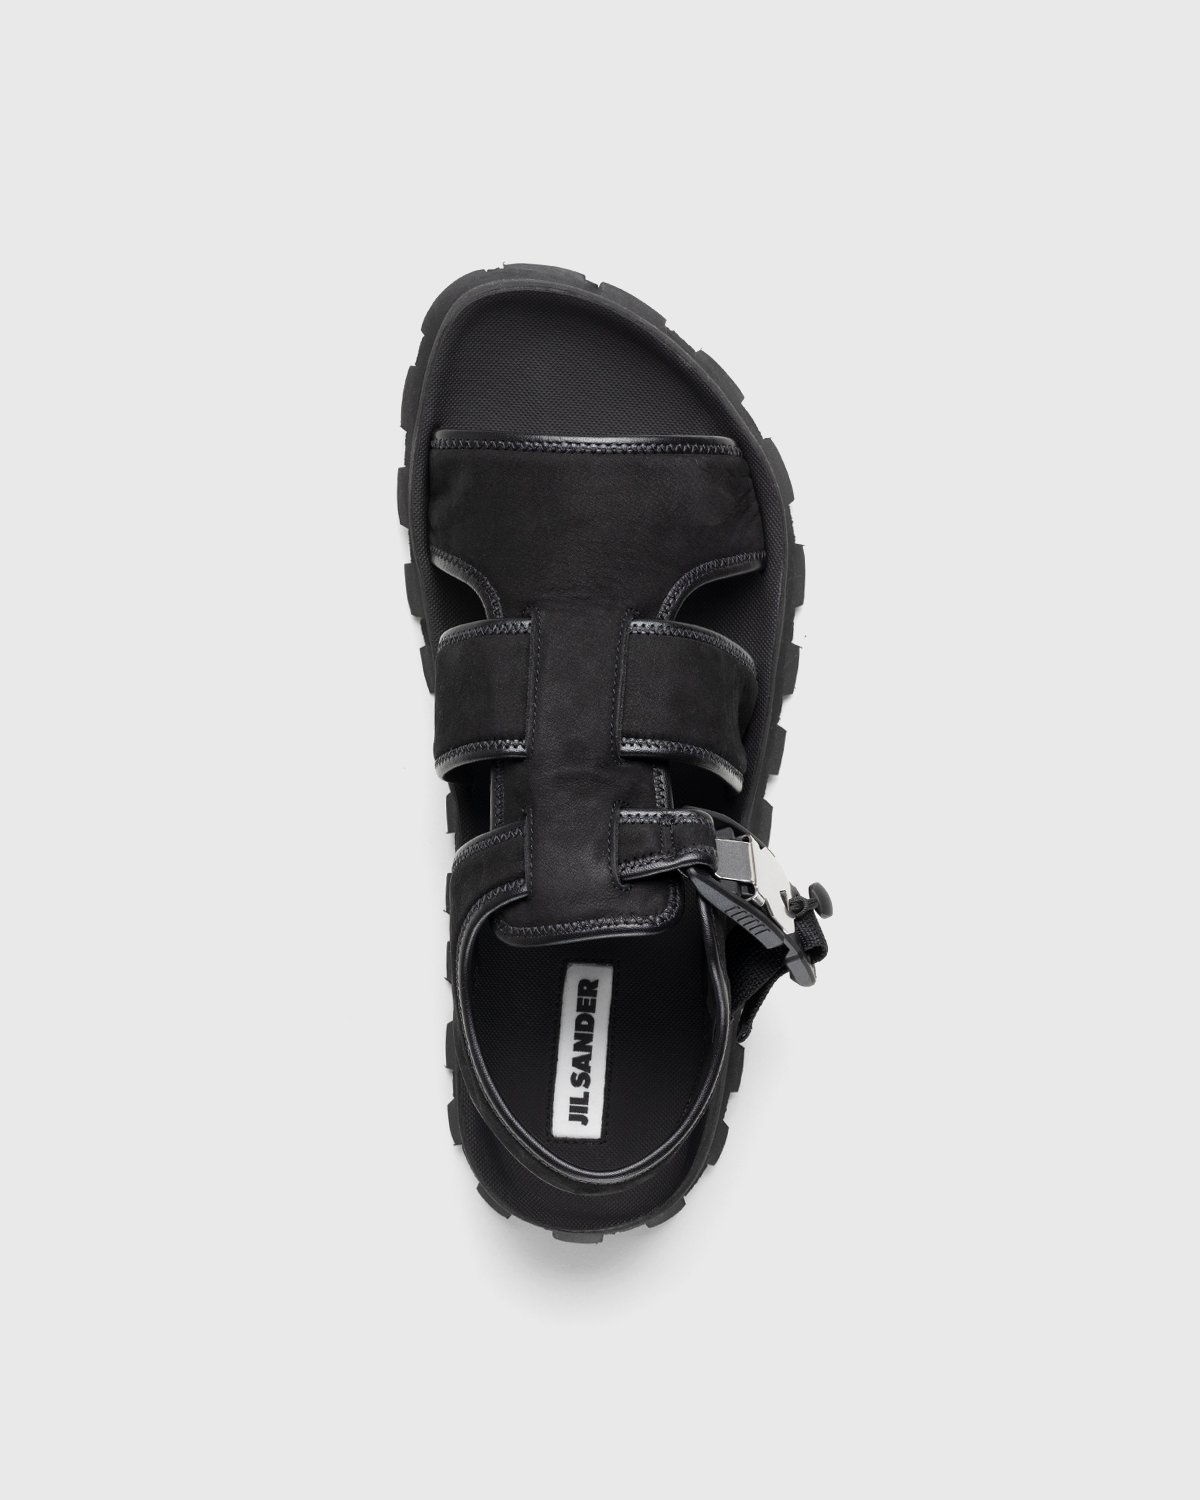 Jil Sander - Calfskin Leather Sandal Black - Footwear - Black - Image 6